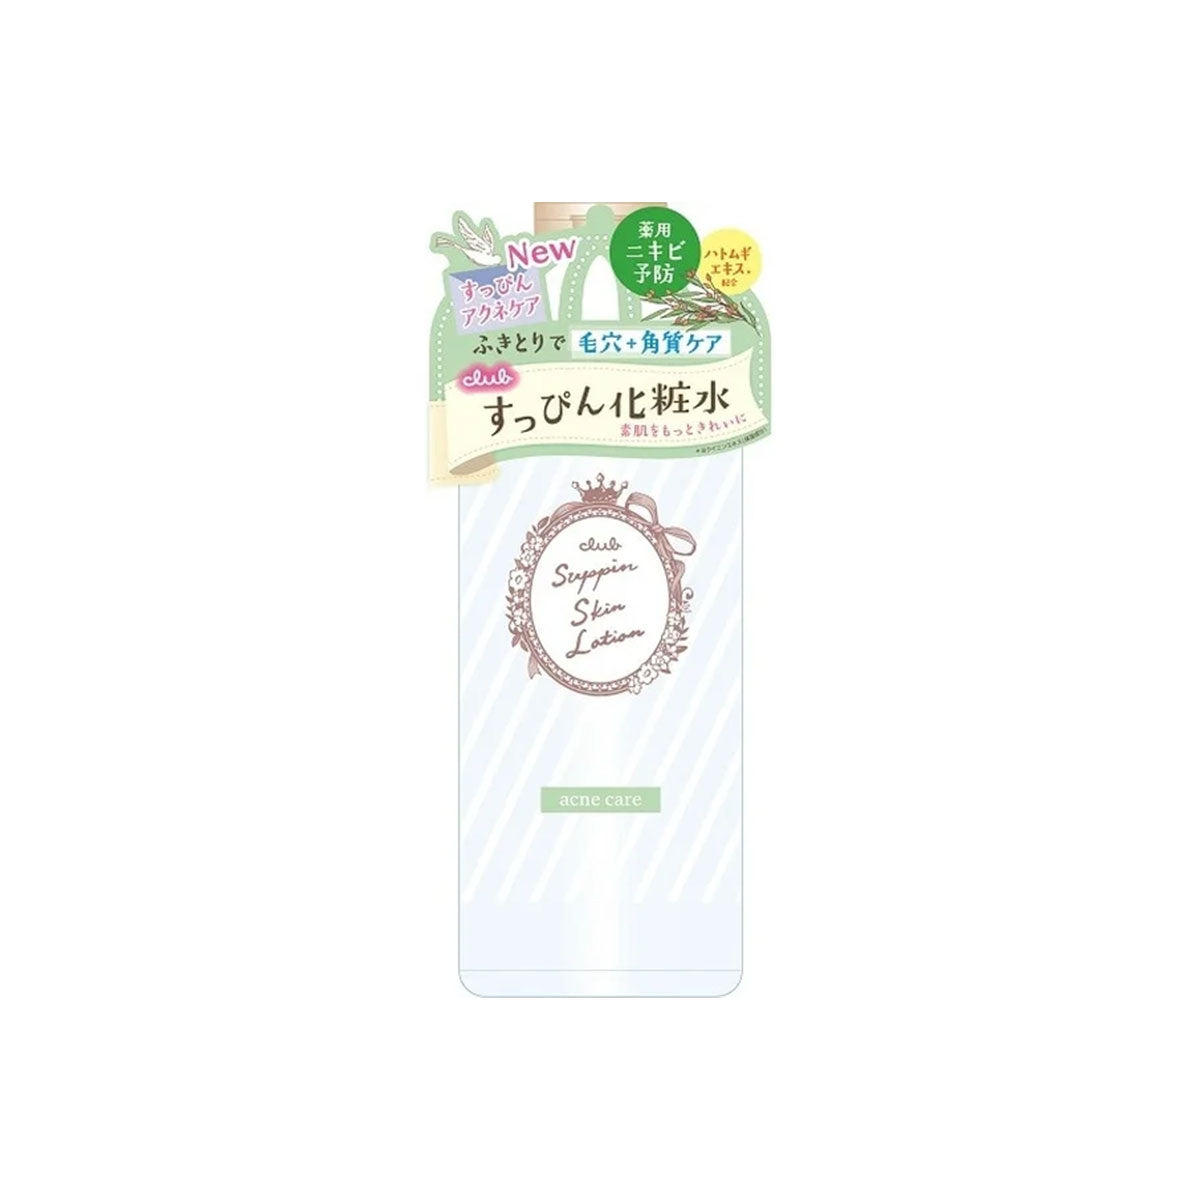 日本Club毛孔角质温和护理化妆水 500ml 